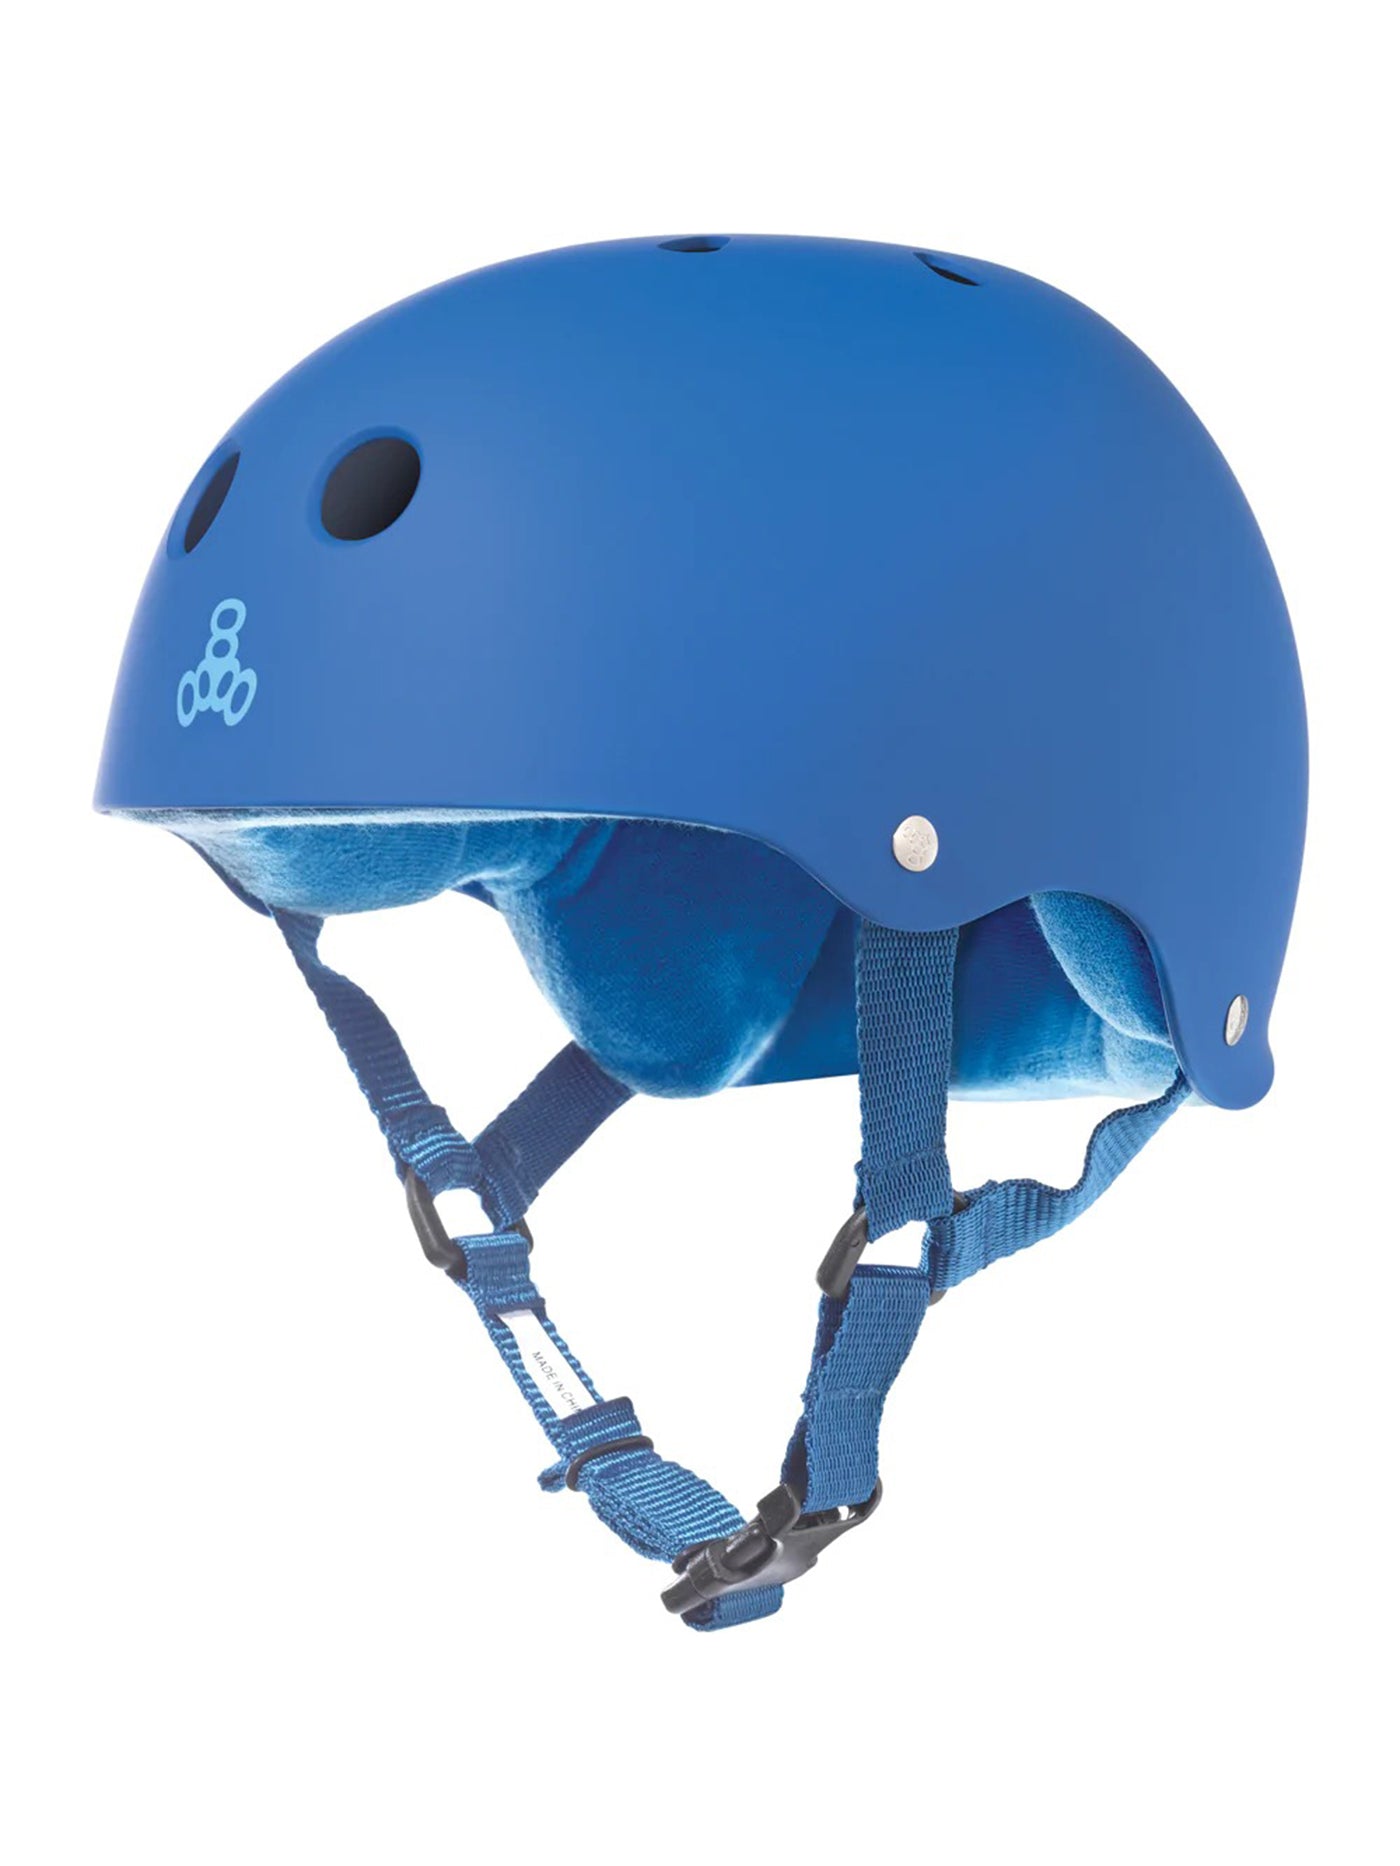 Triple 8 Sweatsaver Rubber Helmet